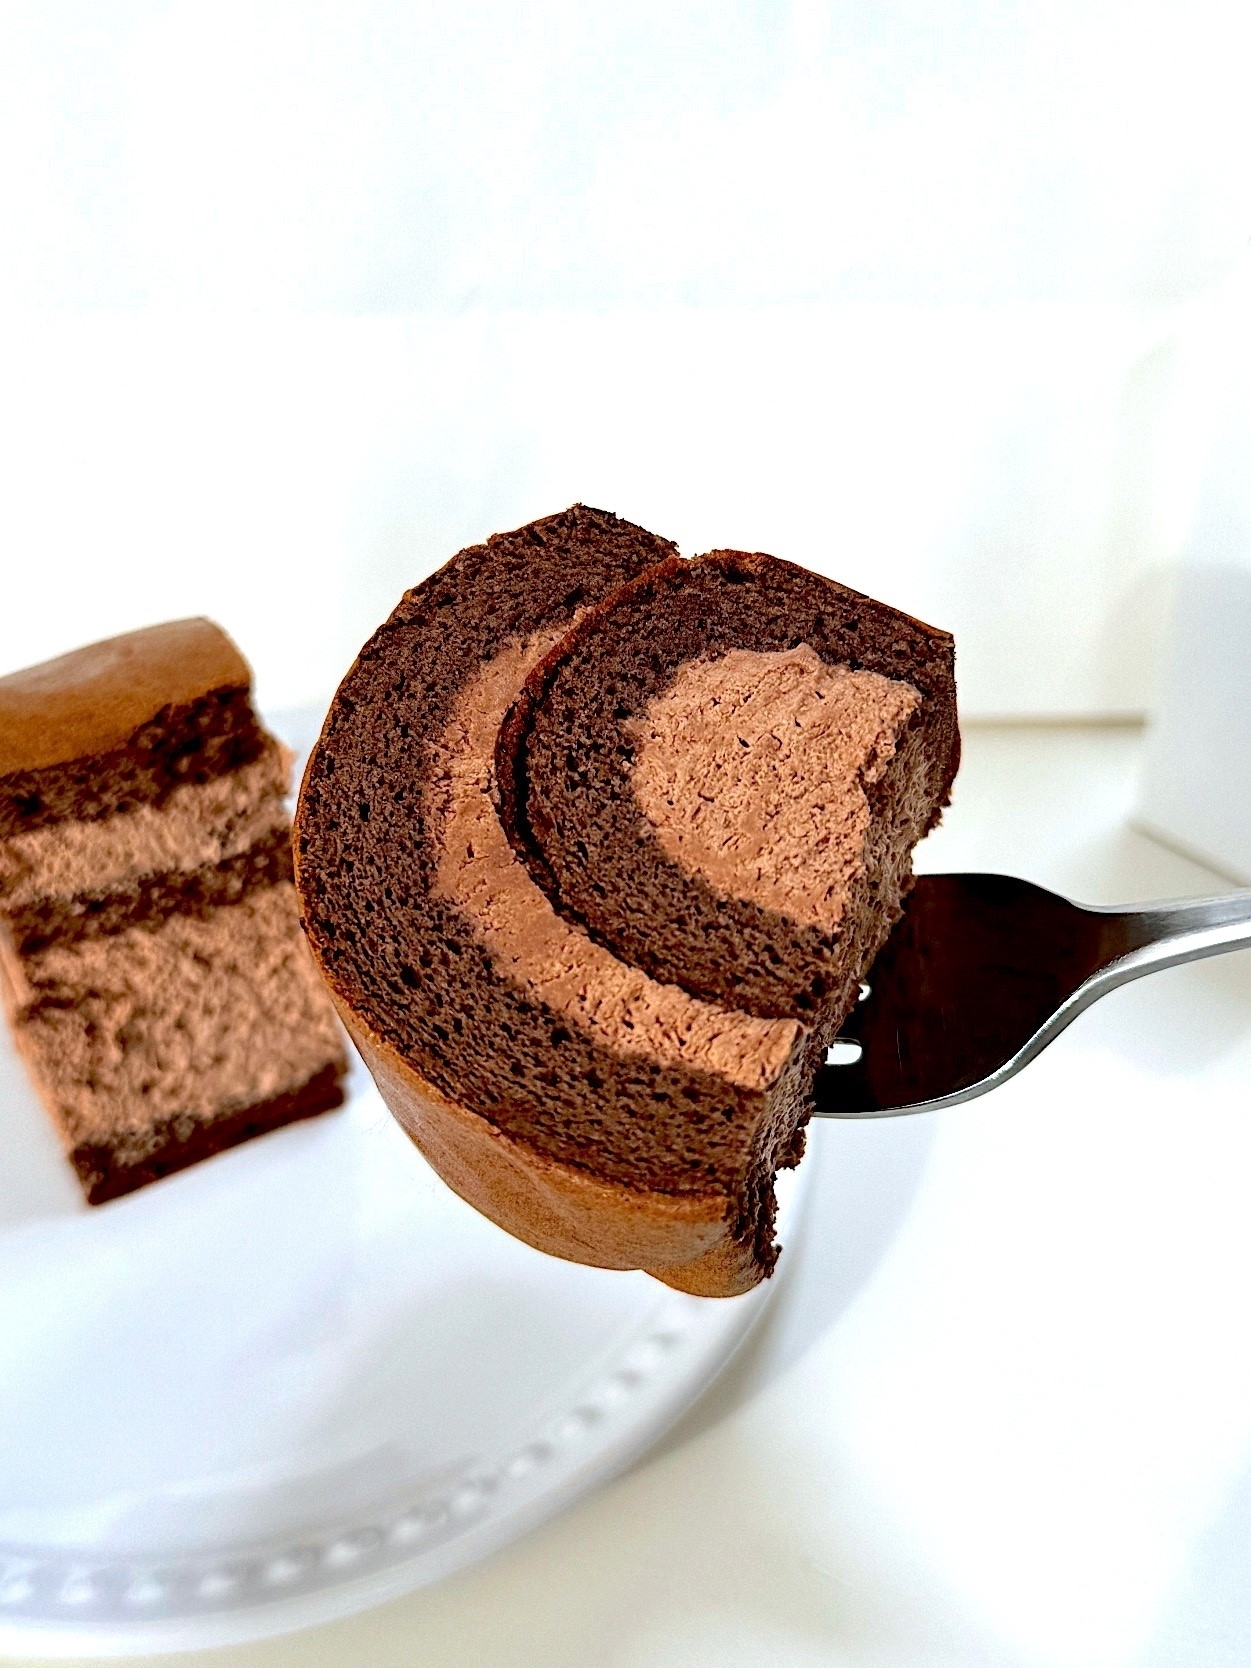 星乃珈琲のおすすめケーキ「チョコレートロールケーキ」